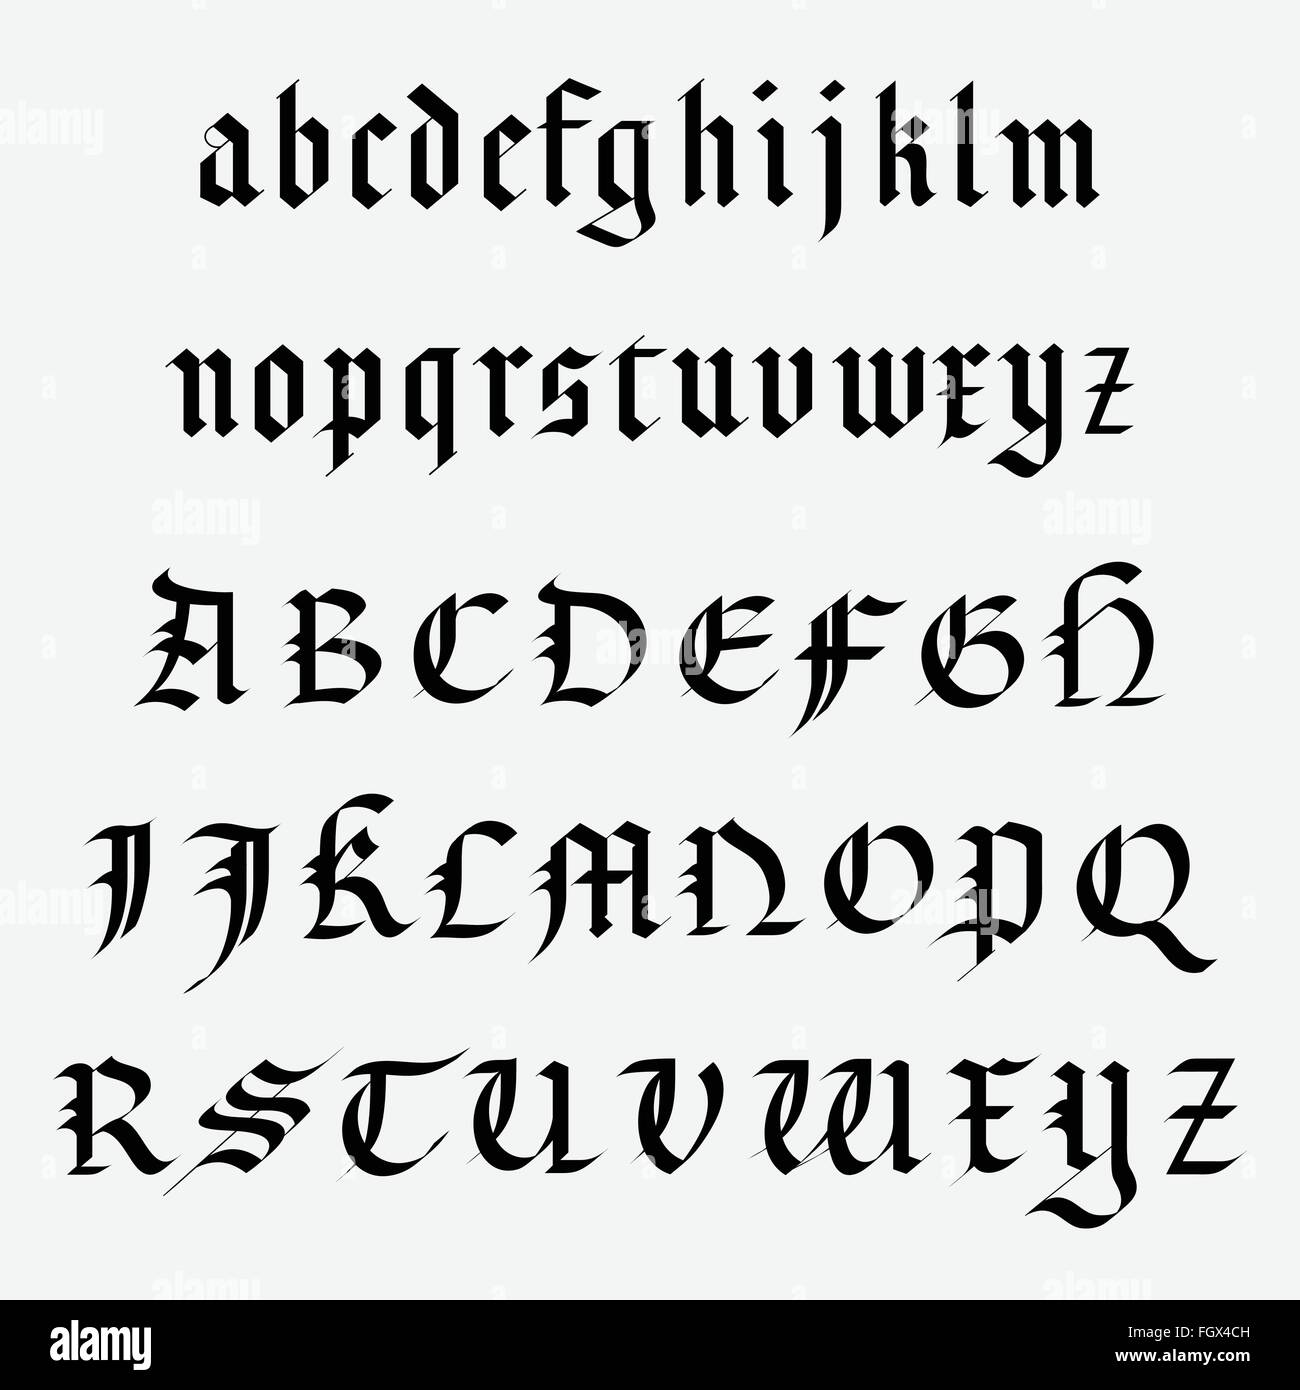 Medieval alphabet immagini e fotografie stock ad alta risoluzione - Alamy